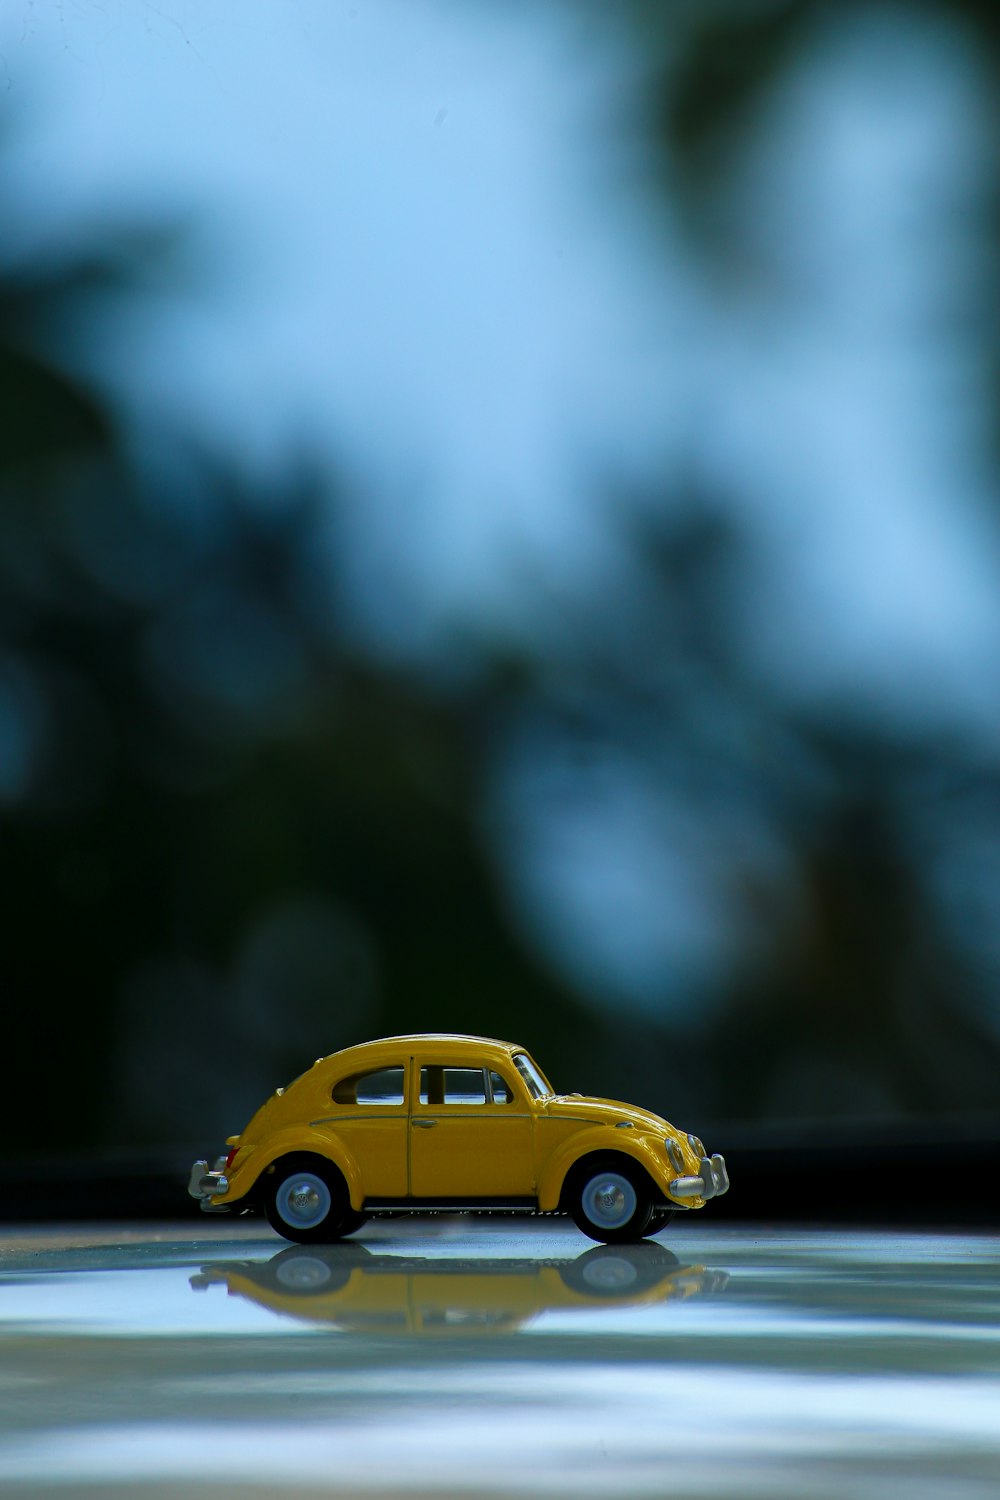 besouro volkswagen amarelo na estrada de asfalto preto na lente de mudança de inclinação